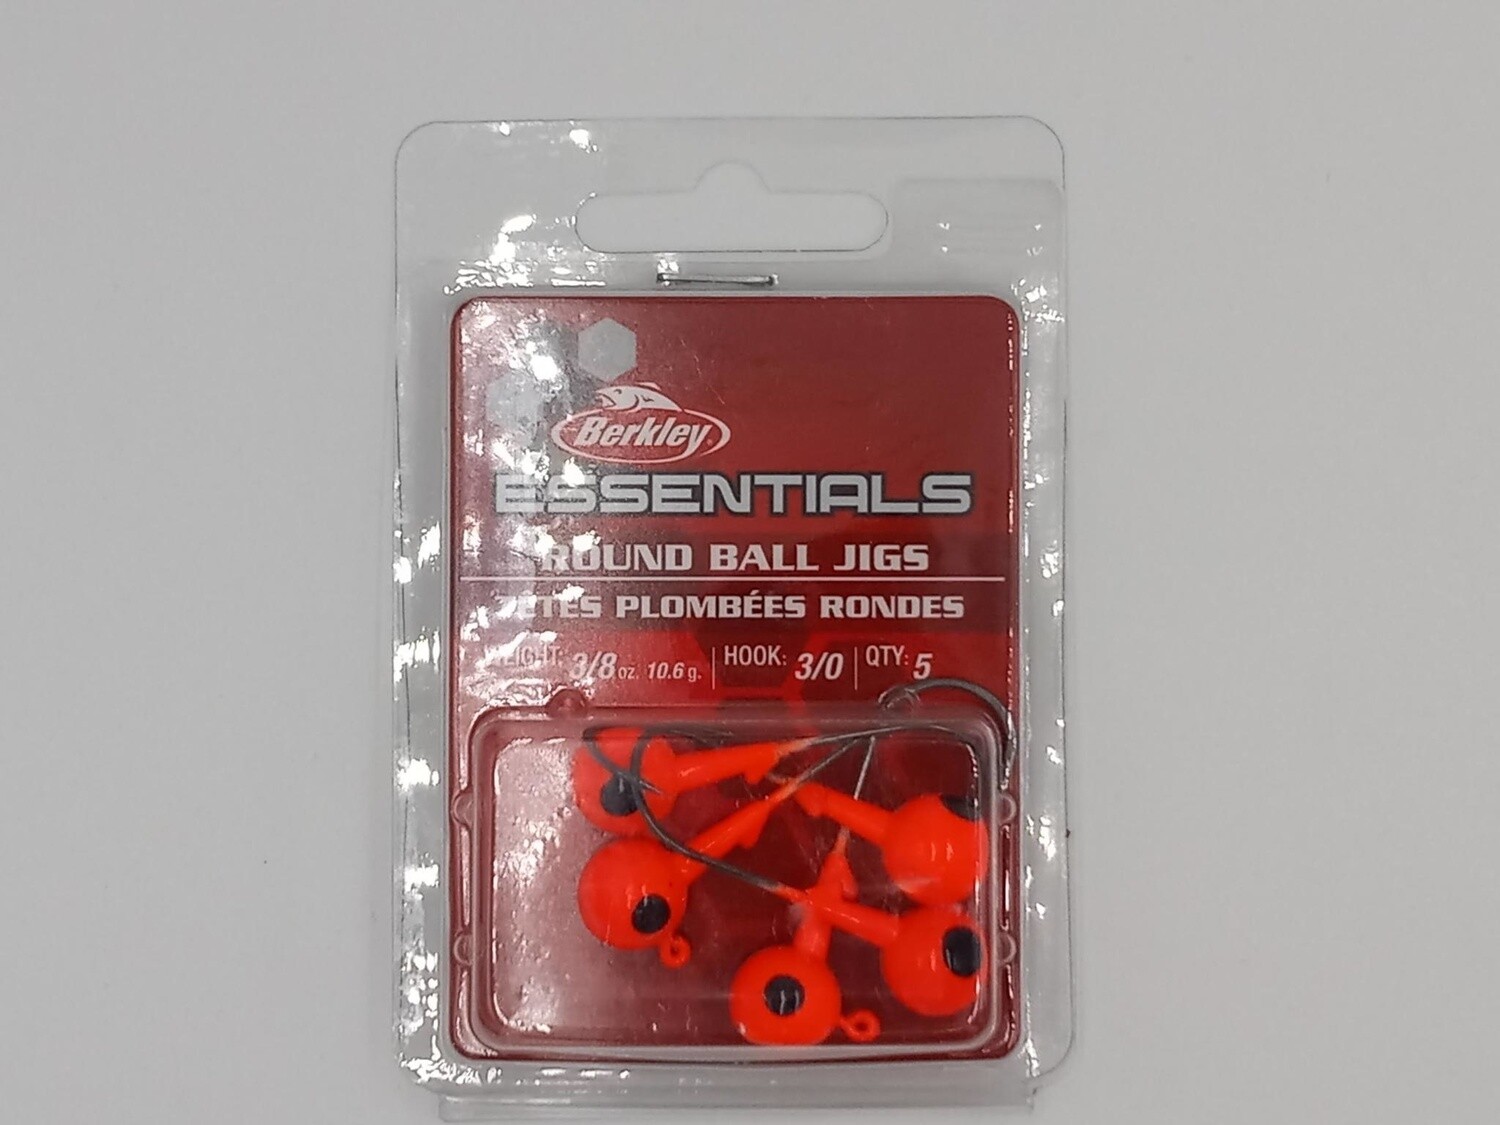 Berkley Essentials Round Ball Jigs Orange 3/0 3/8oz